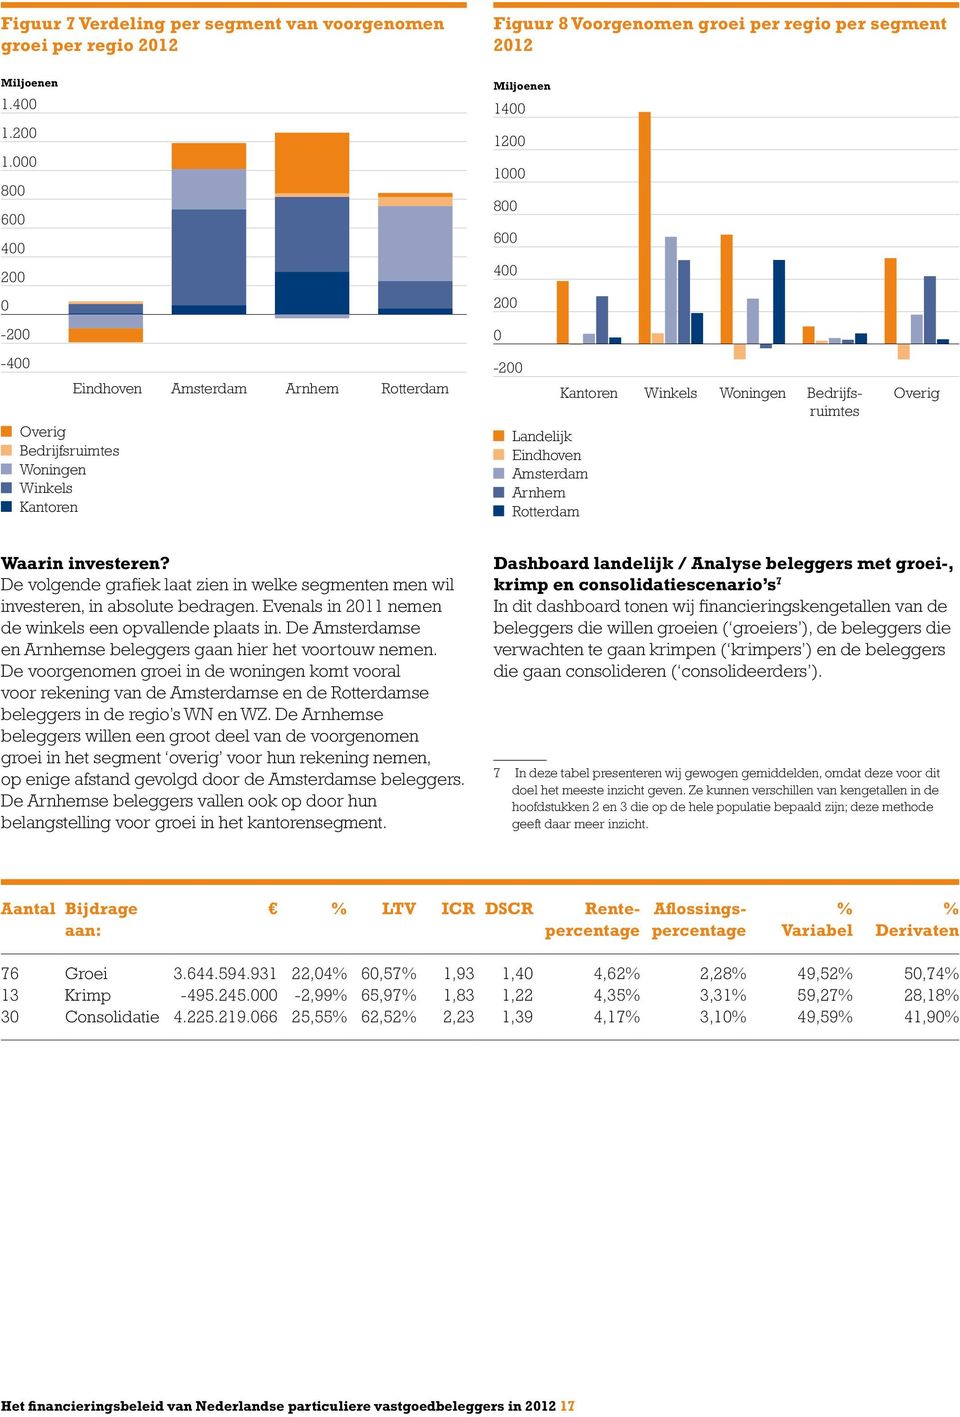 Rotterdam Winkels Woningen Bedrijfsruimtes Overig Waarin investeren? De volgende grafiek laat zien in welke segmenten men wil investeren, in absolute bedragen.